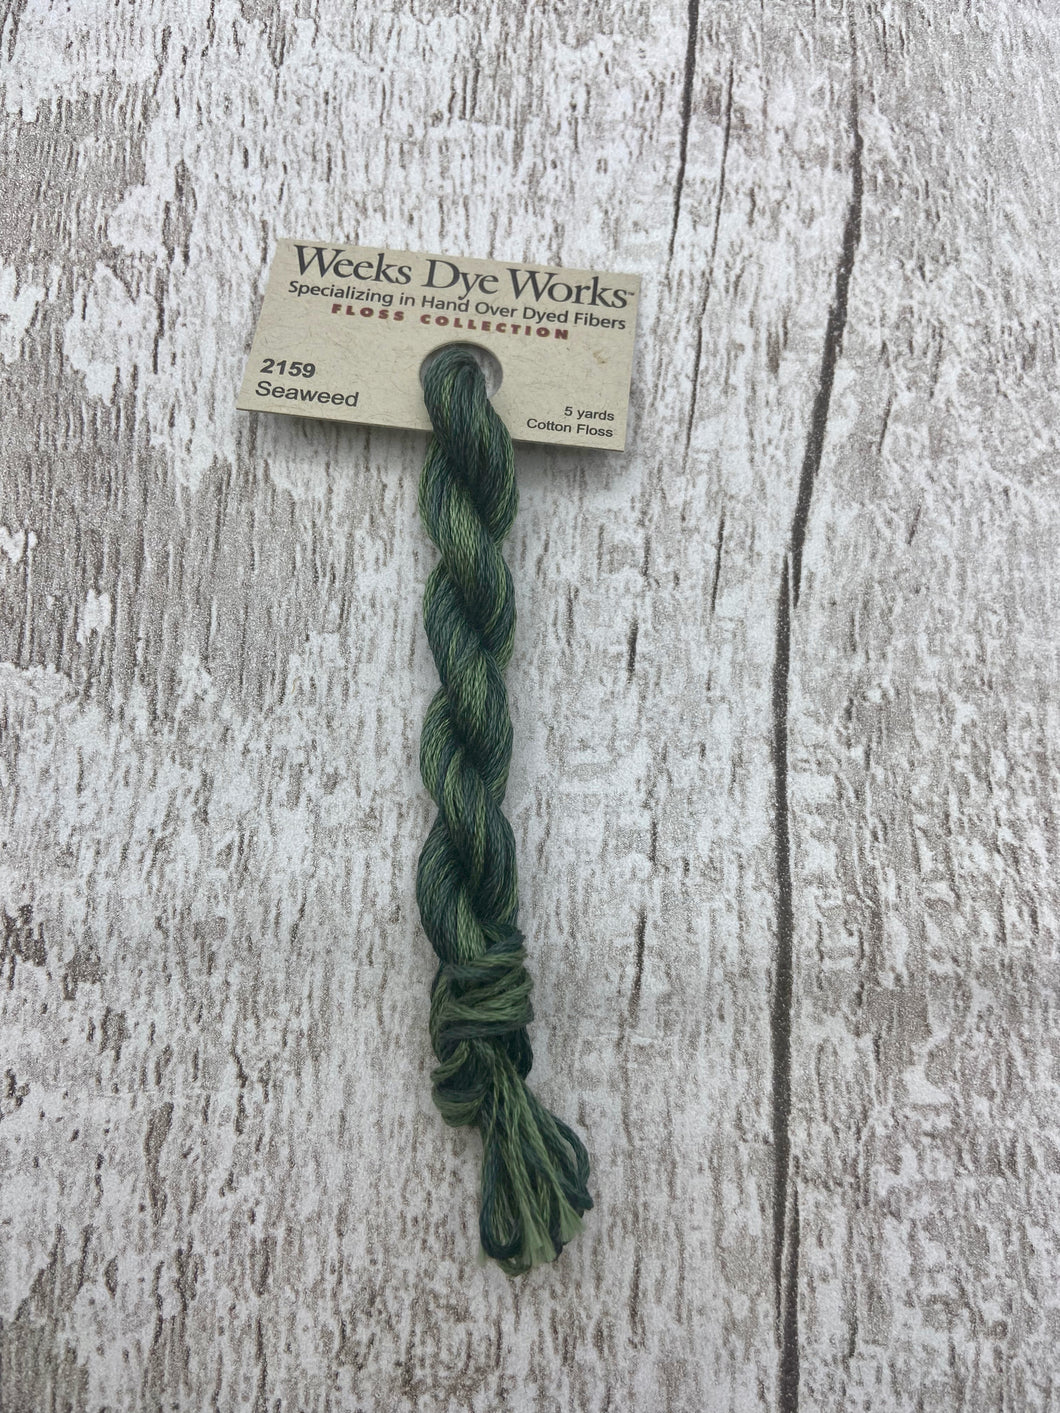 Seaweed (#2159) Weeks Dye Works, 6-strand cotton floss